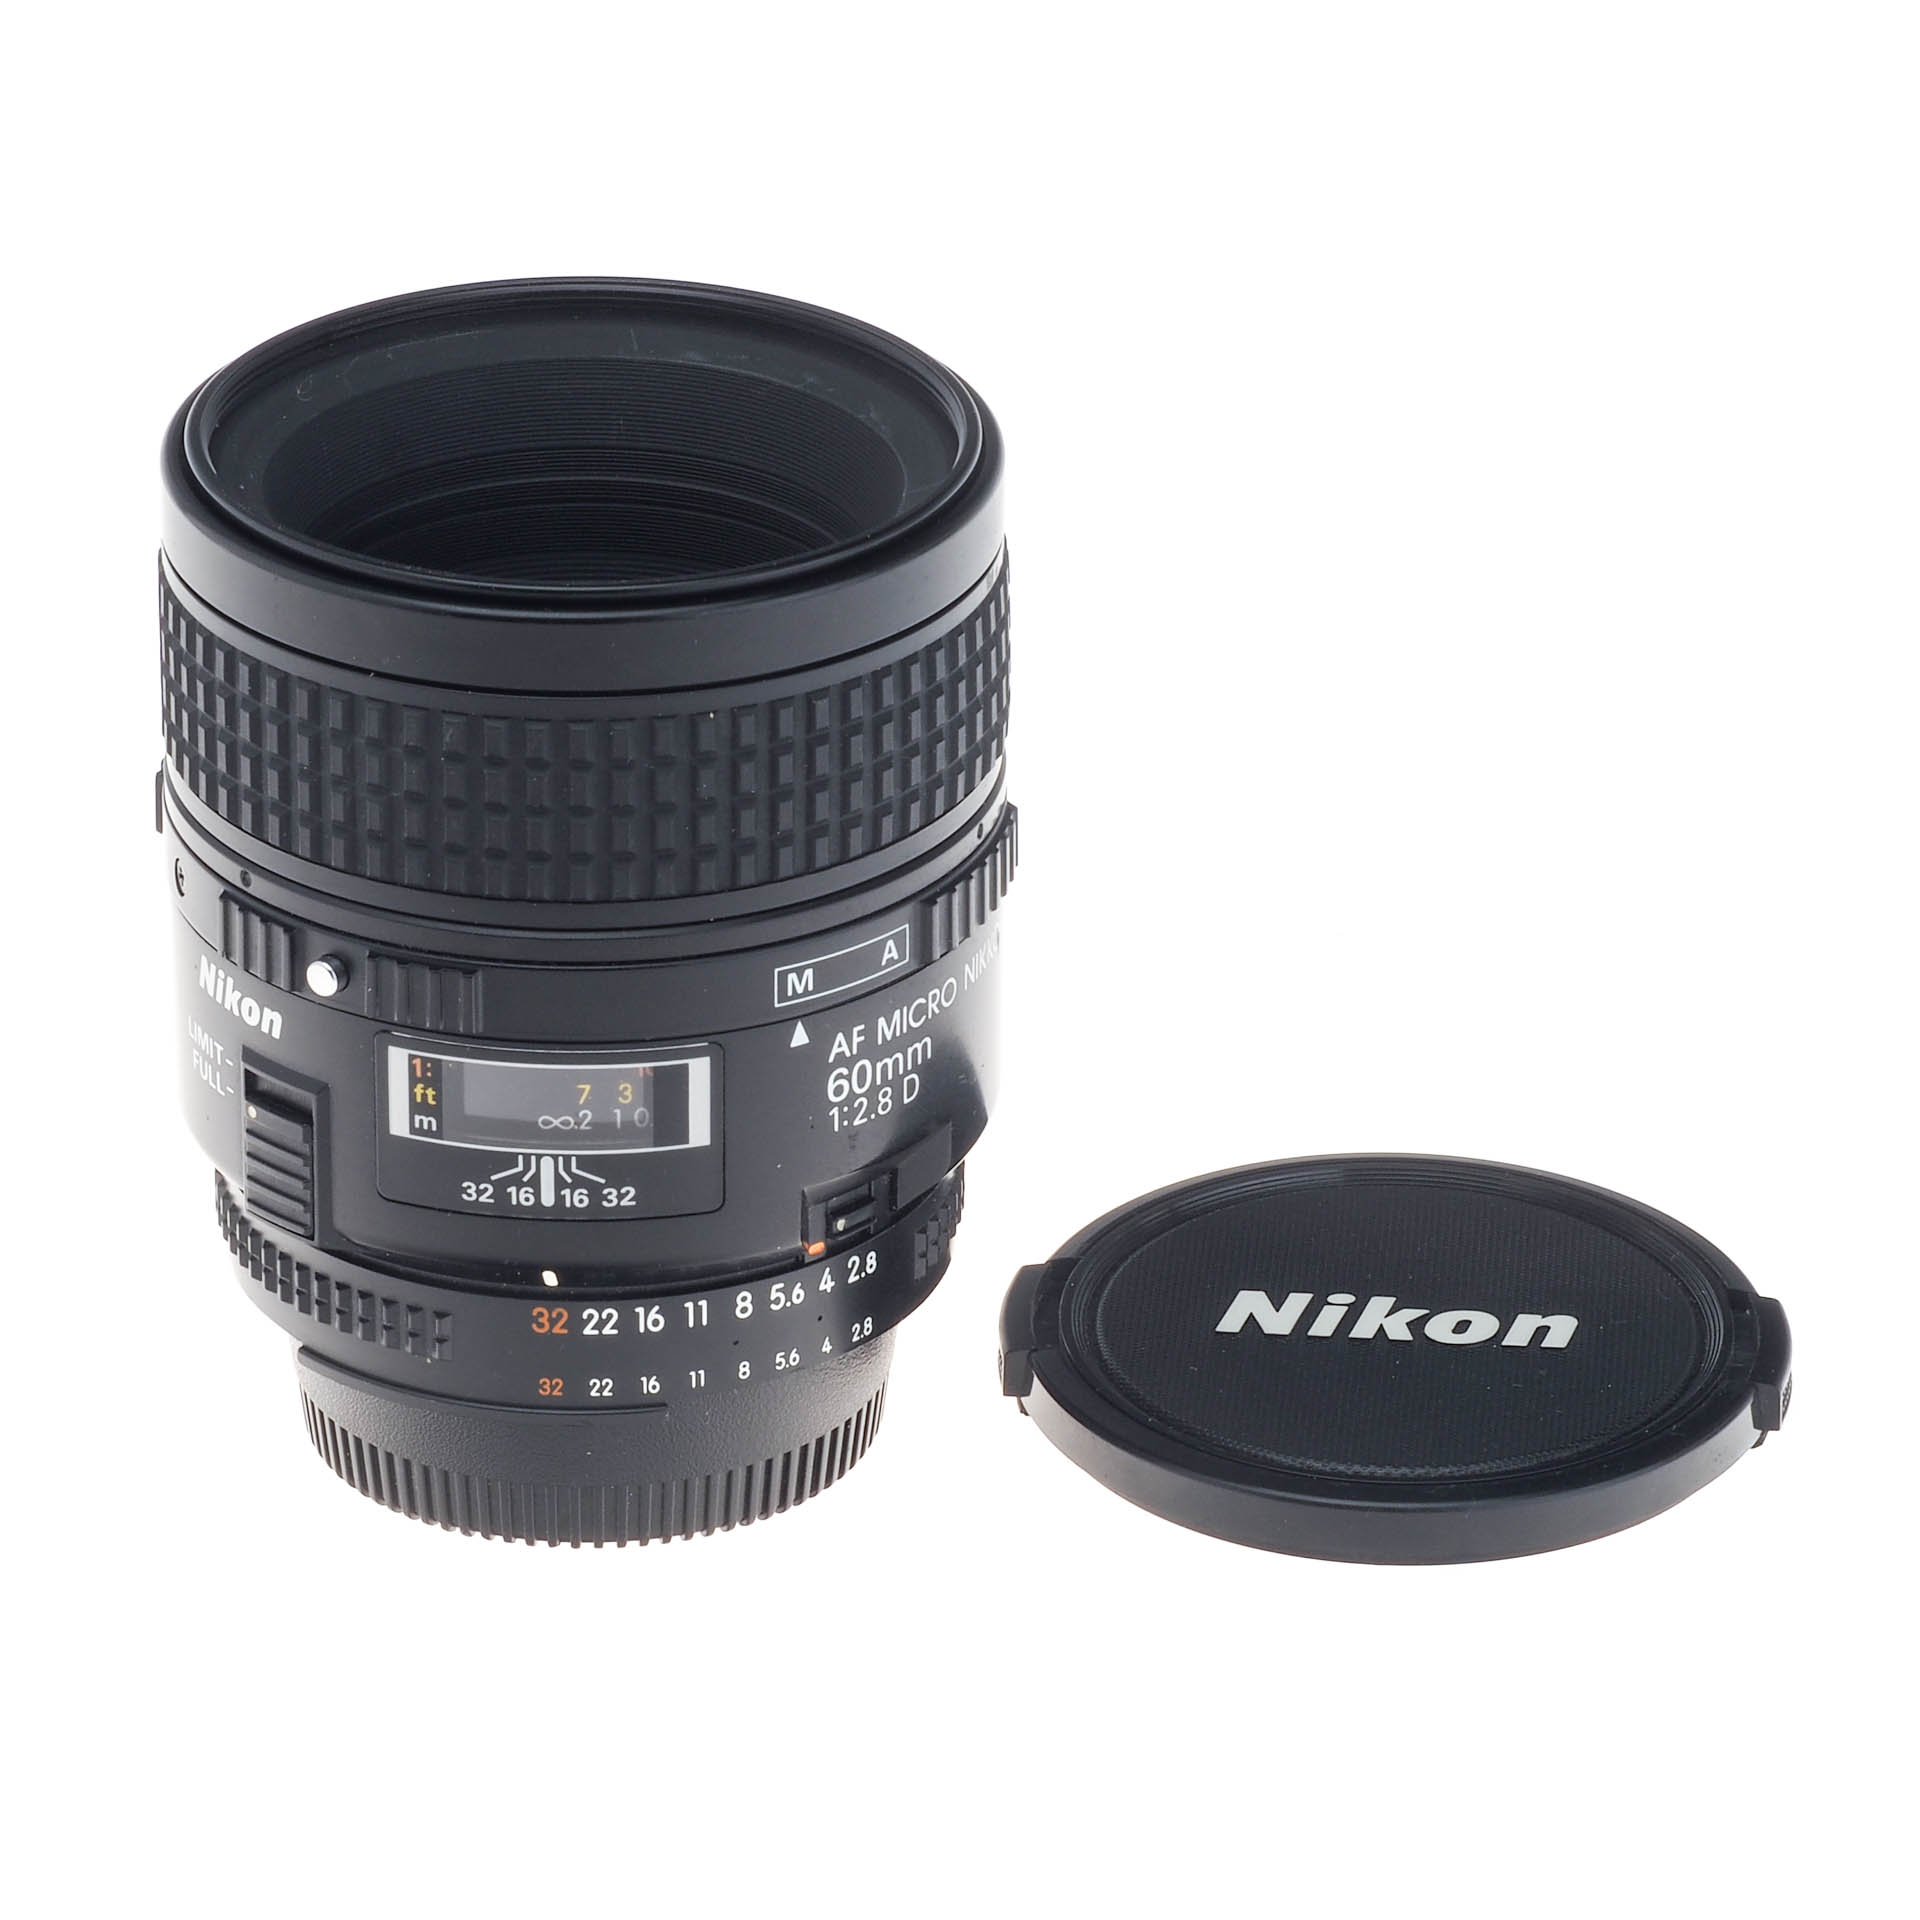 日本売上Nikon AF Micro Nikkor 60mm f/2.8D レンズ(単焦点)